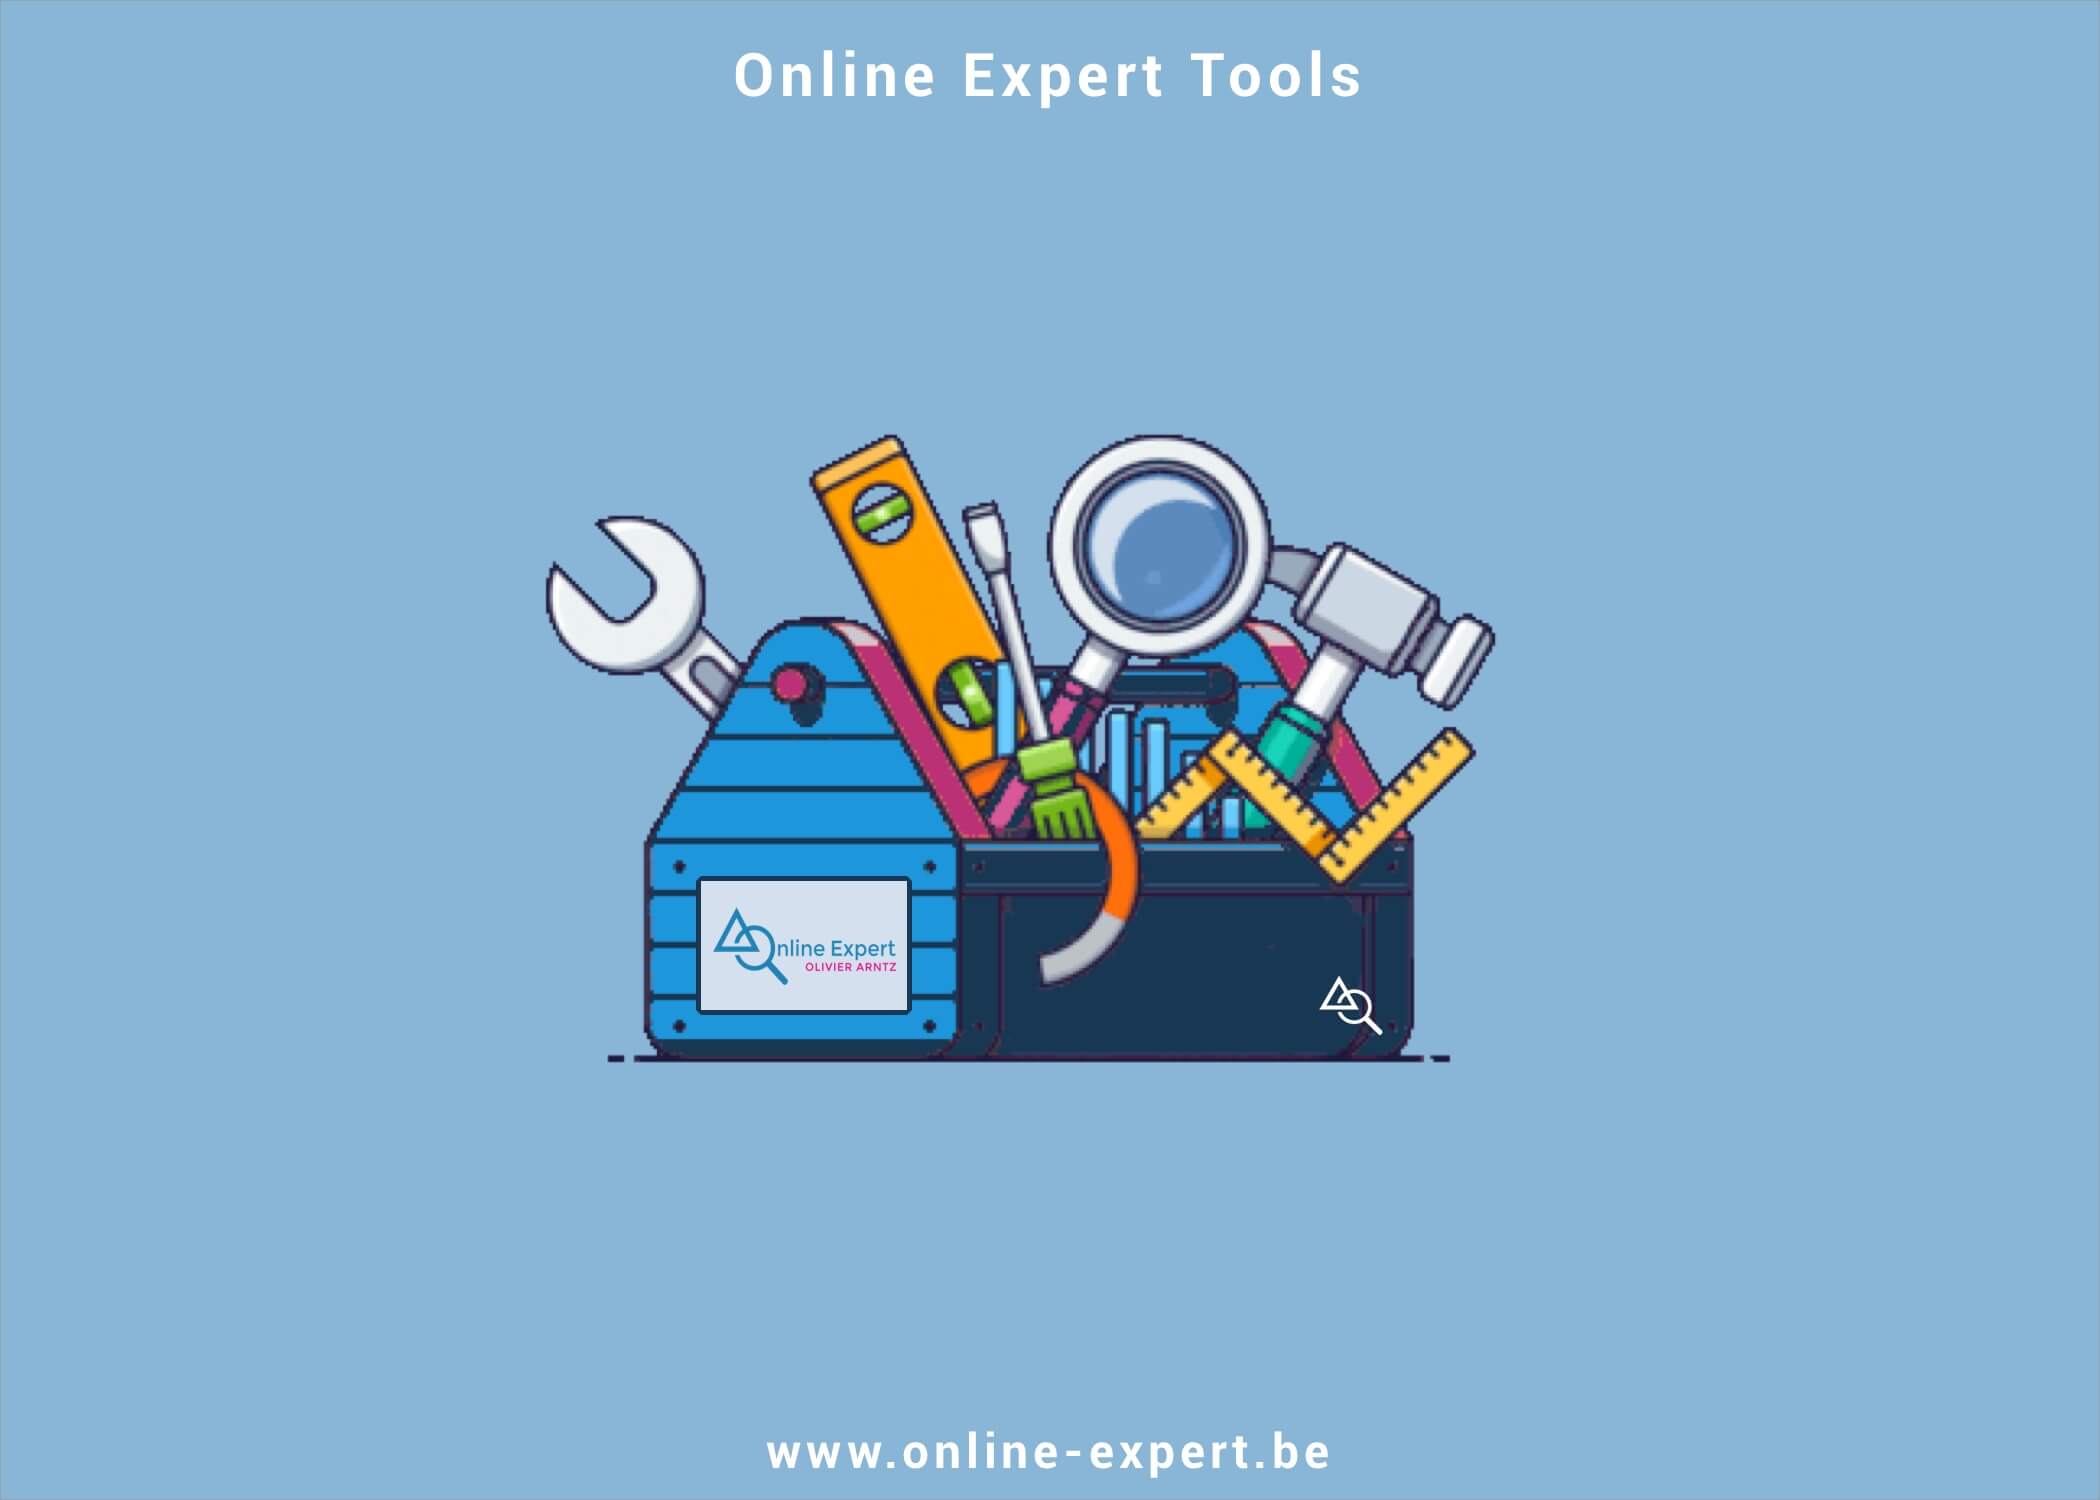 Online Expert Tools